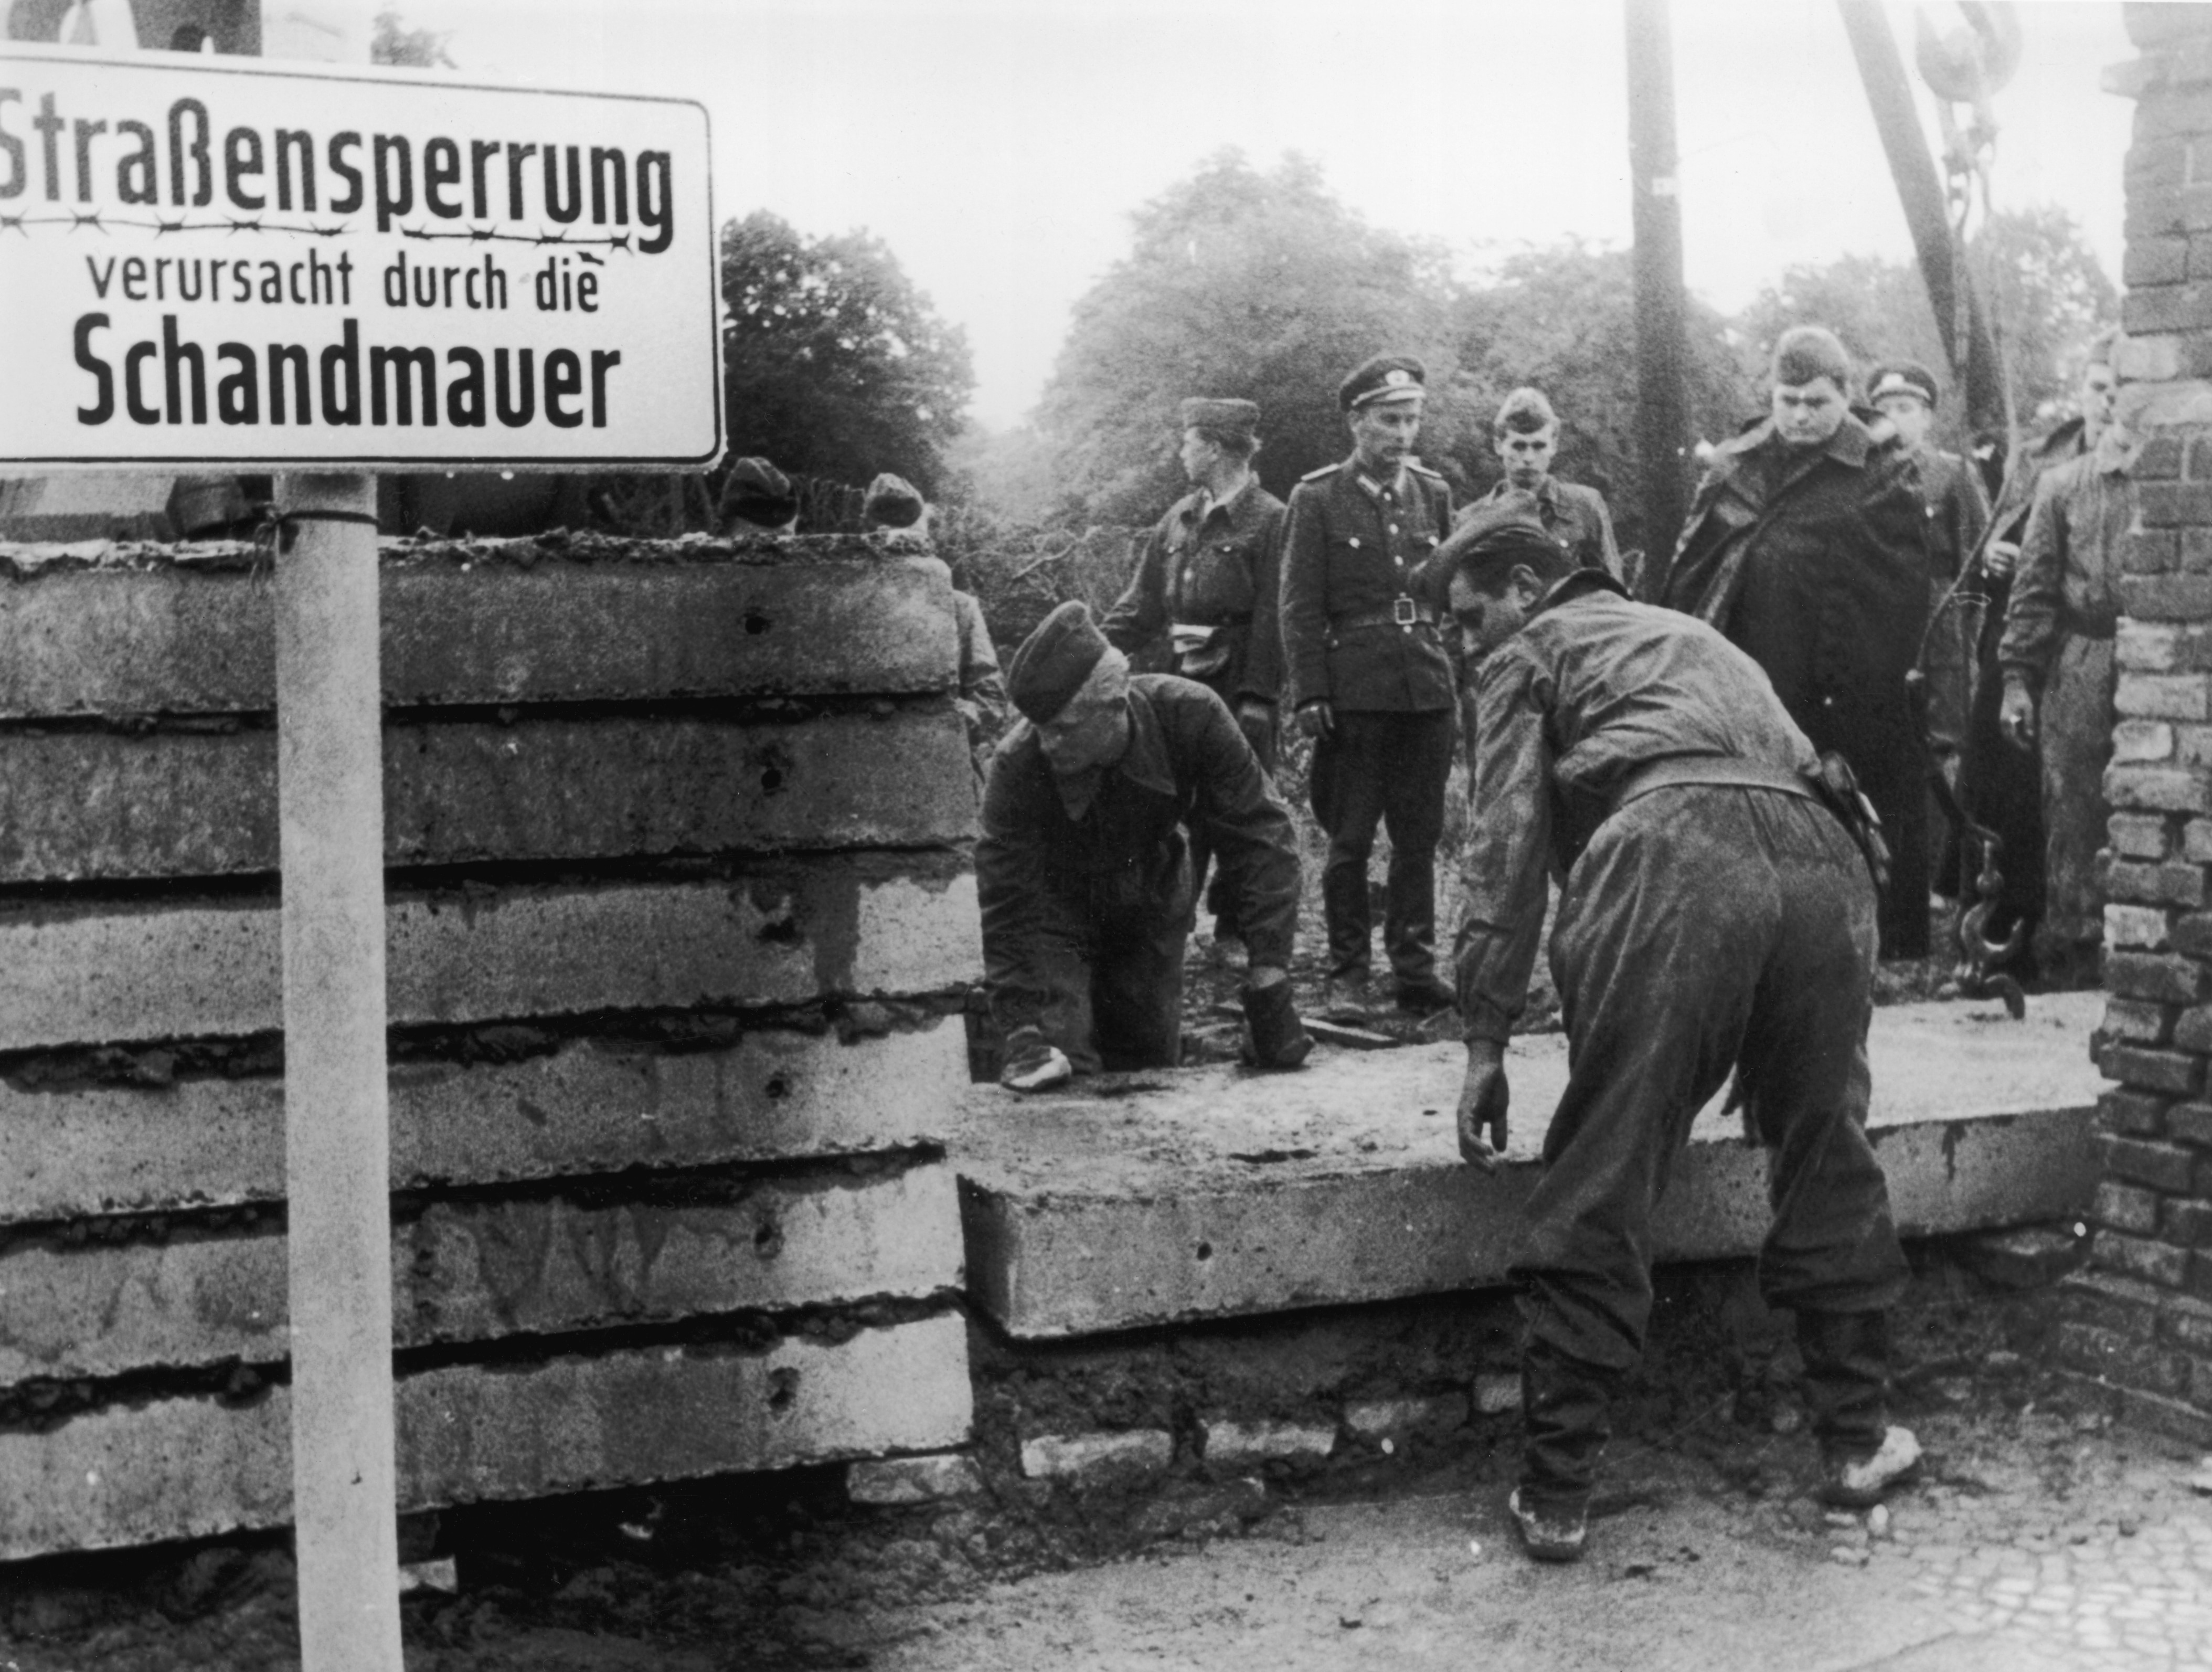 13 agosto 1961, soldati della Germania dell’Est intenti a edificare il muro che divide Berlino in due parti